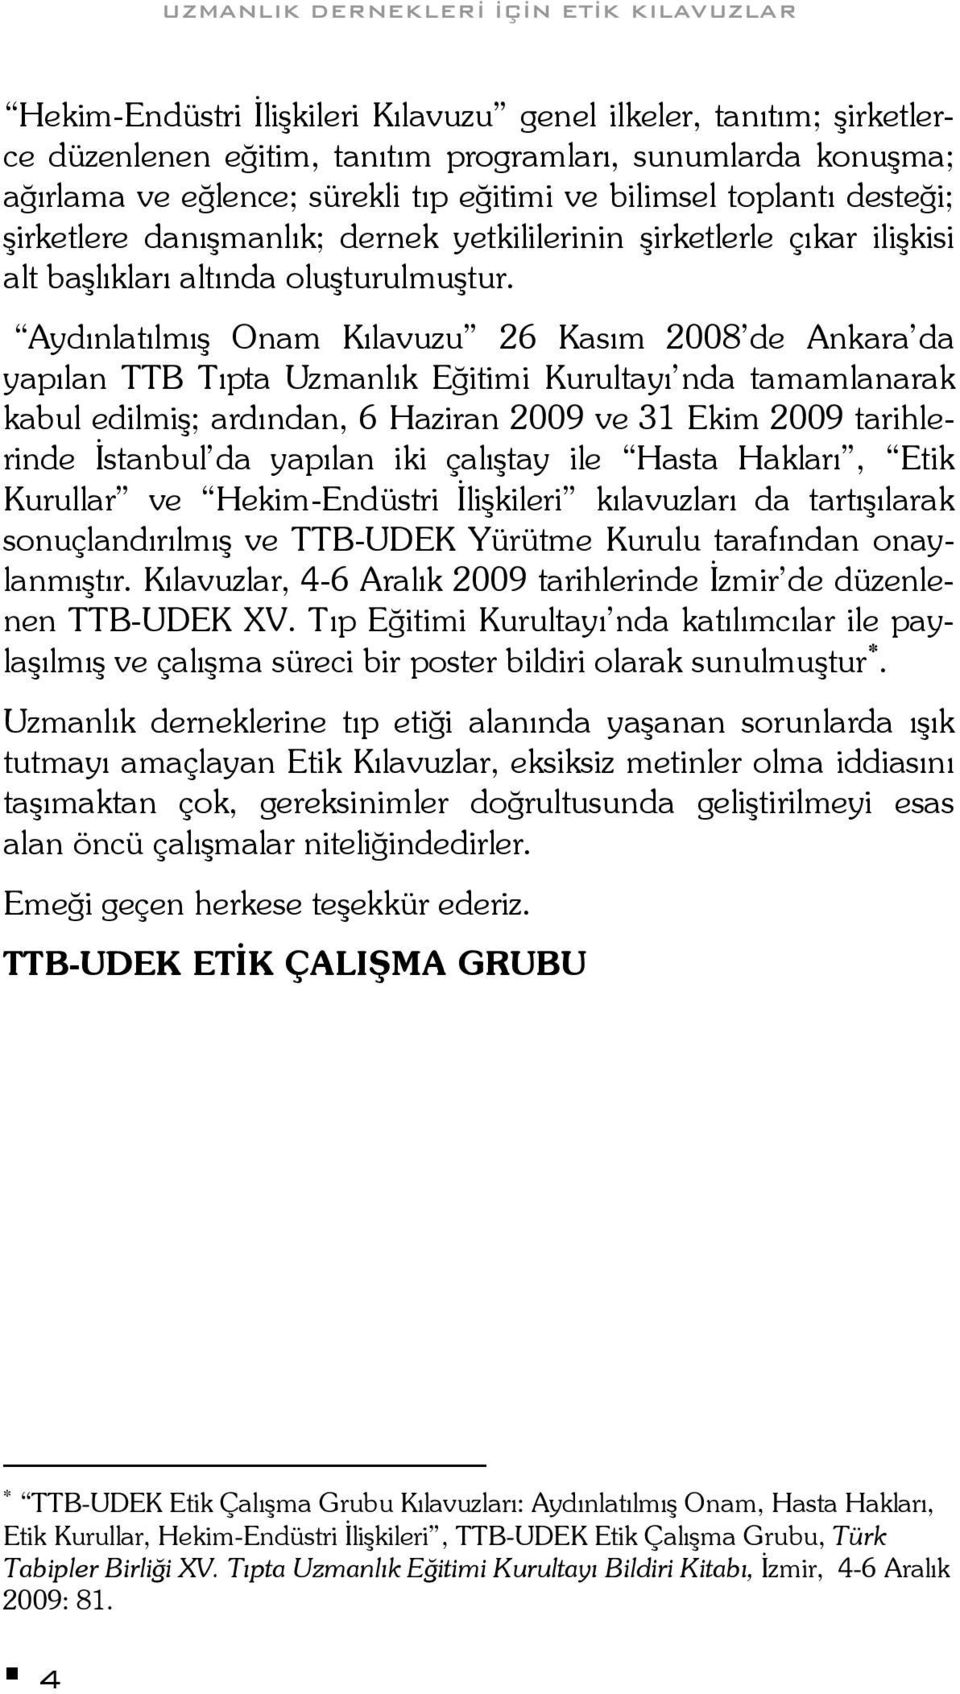 Aydınlatılmış Onam Kılavuzu 26 Kasım 2008 de Ankara da yapılan TTB Tıpta Uzmanlık Eğitimi Kurultayı nda tamamlanarak kabul edilmiş; ardından, 6 Haziran 2009 ve 31 Ekim 2009 tarihlerinde İstanbul da